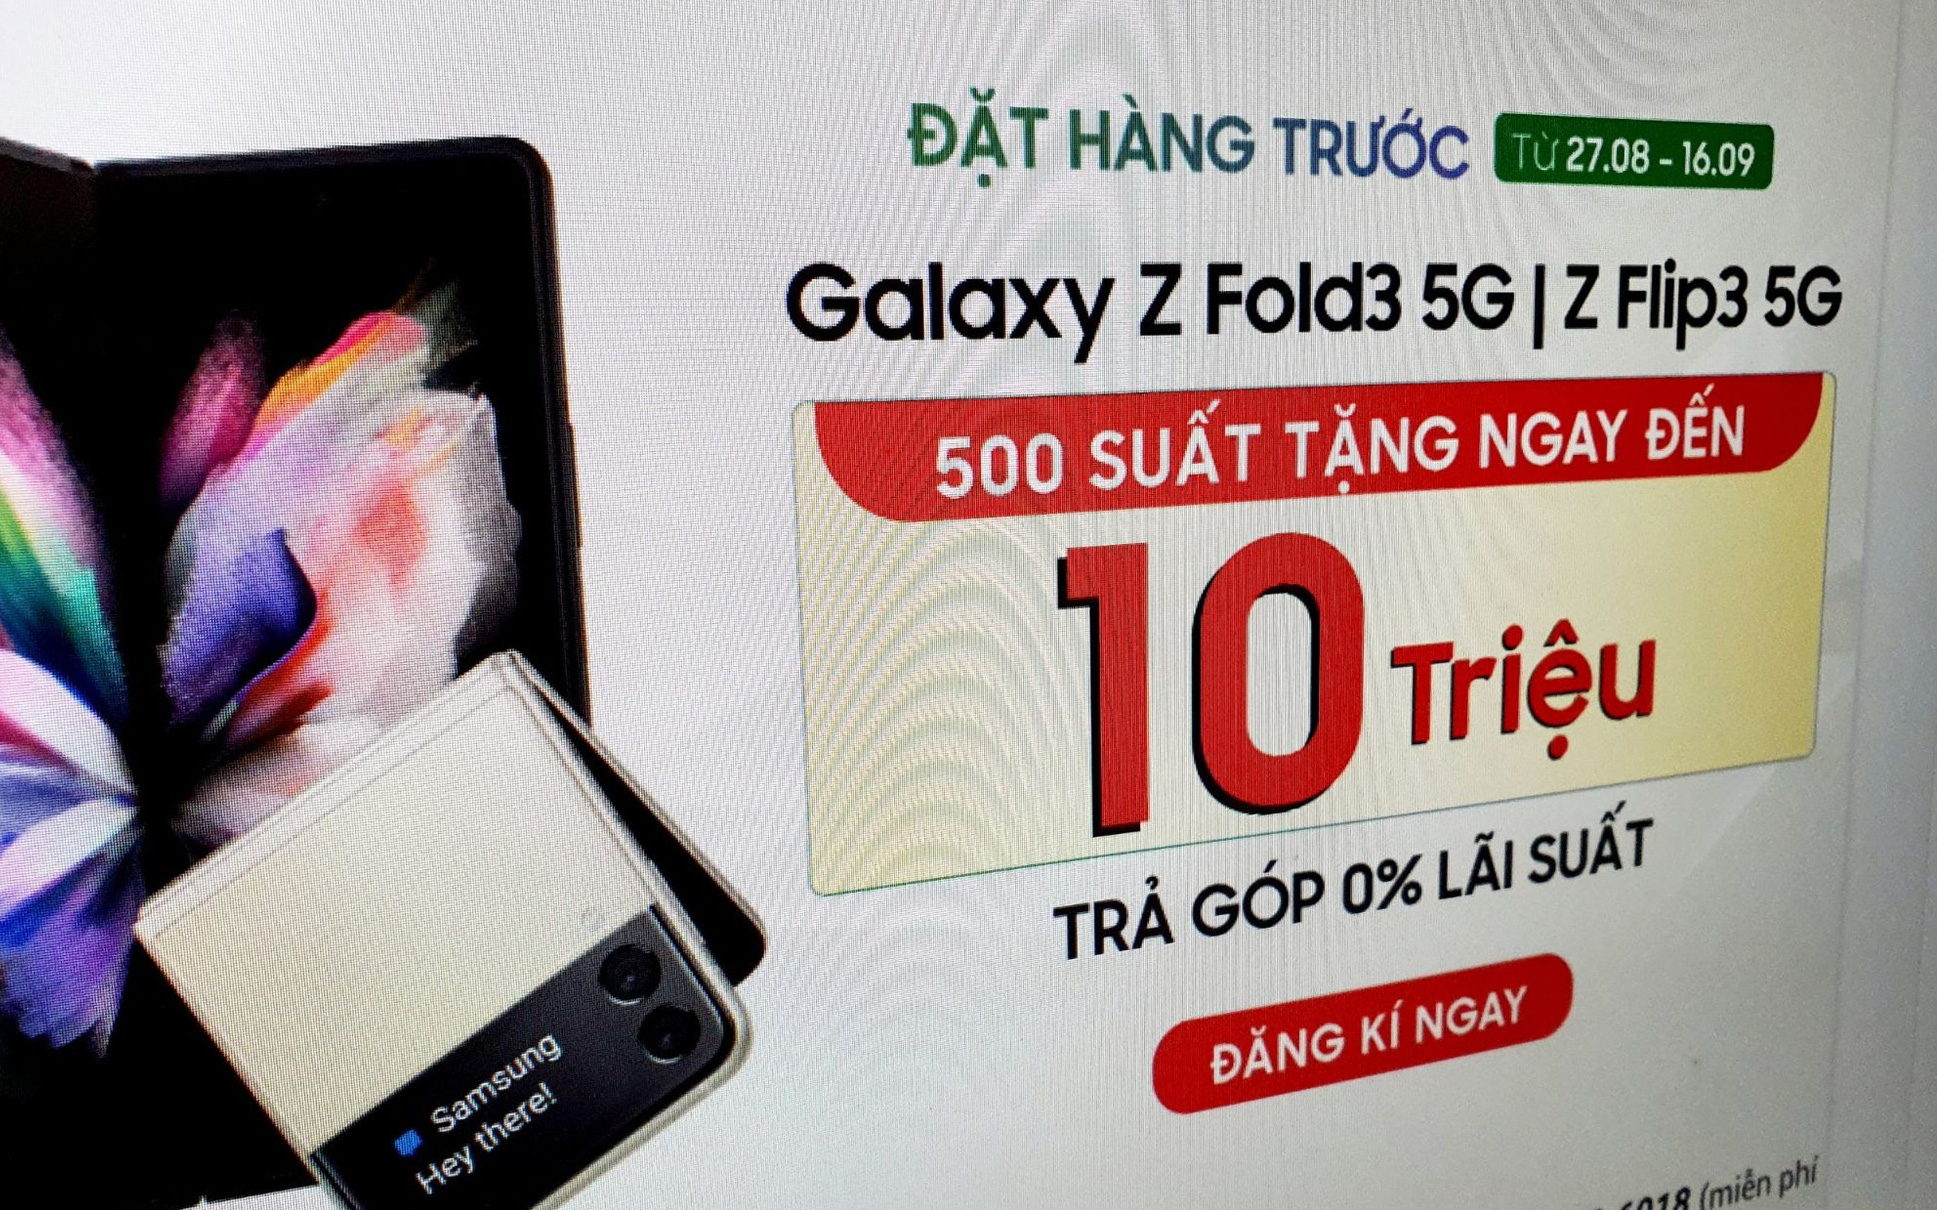 Điện thoại cao cấp nhất của Samsung loạn giá, có nơi giảm 10 triệu đồng trước ngày mở bán tại Việt Nam